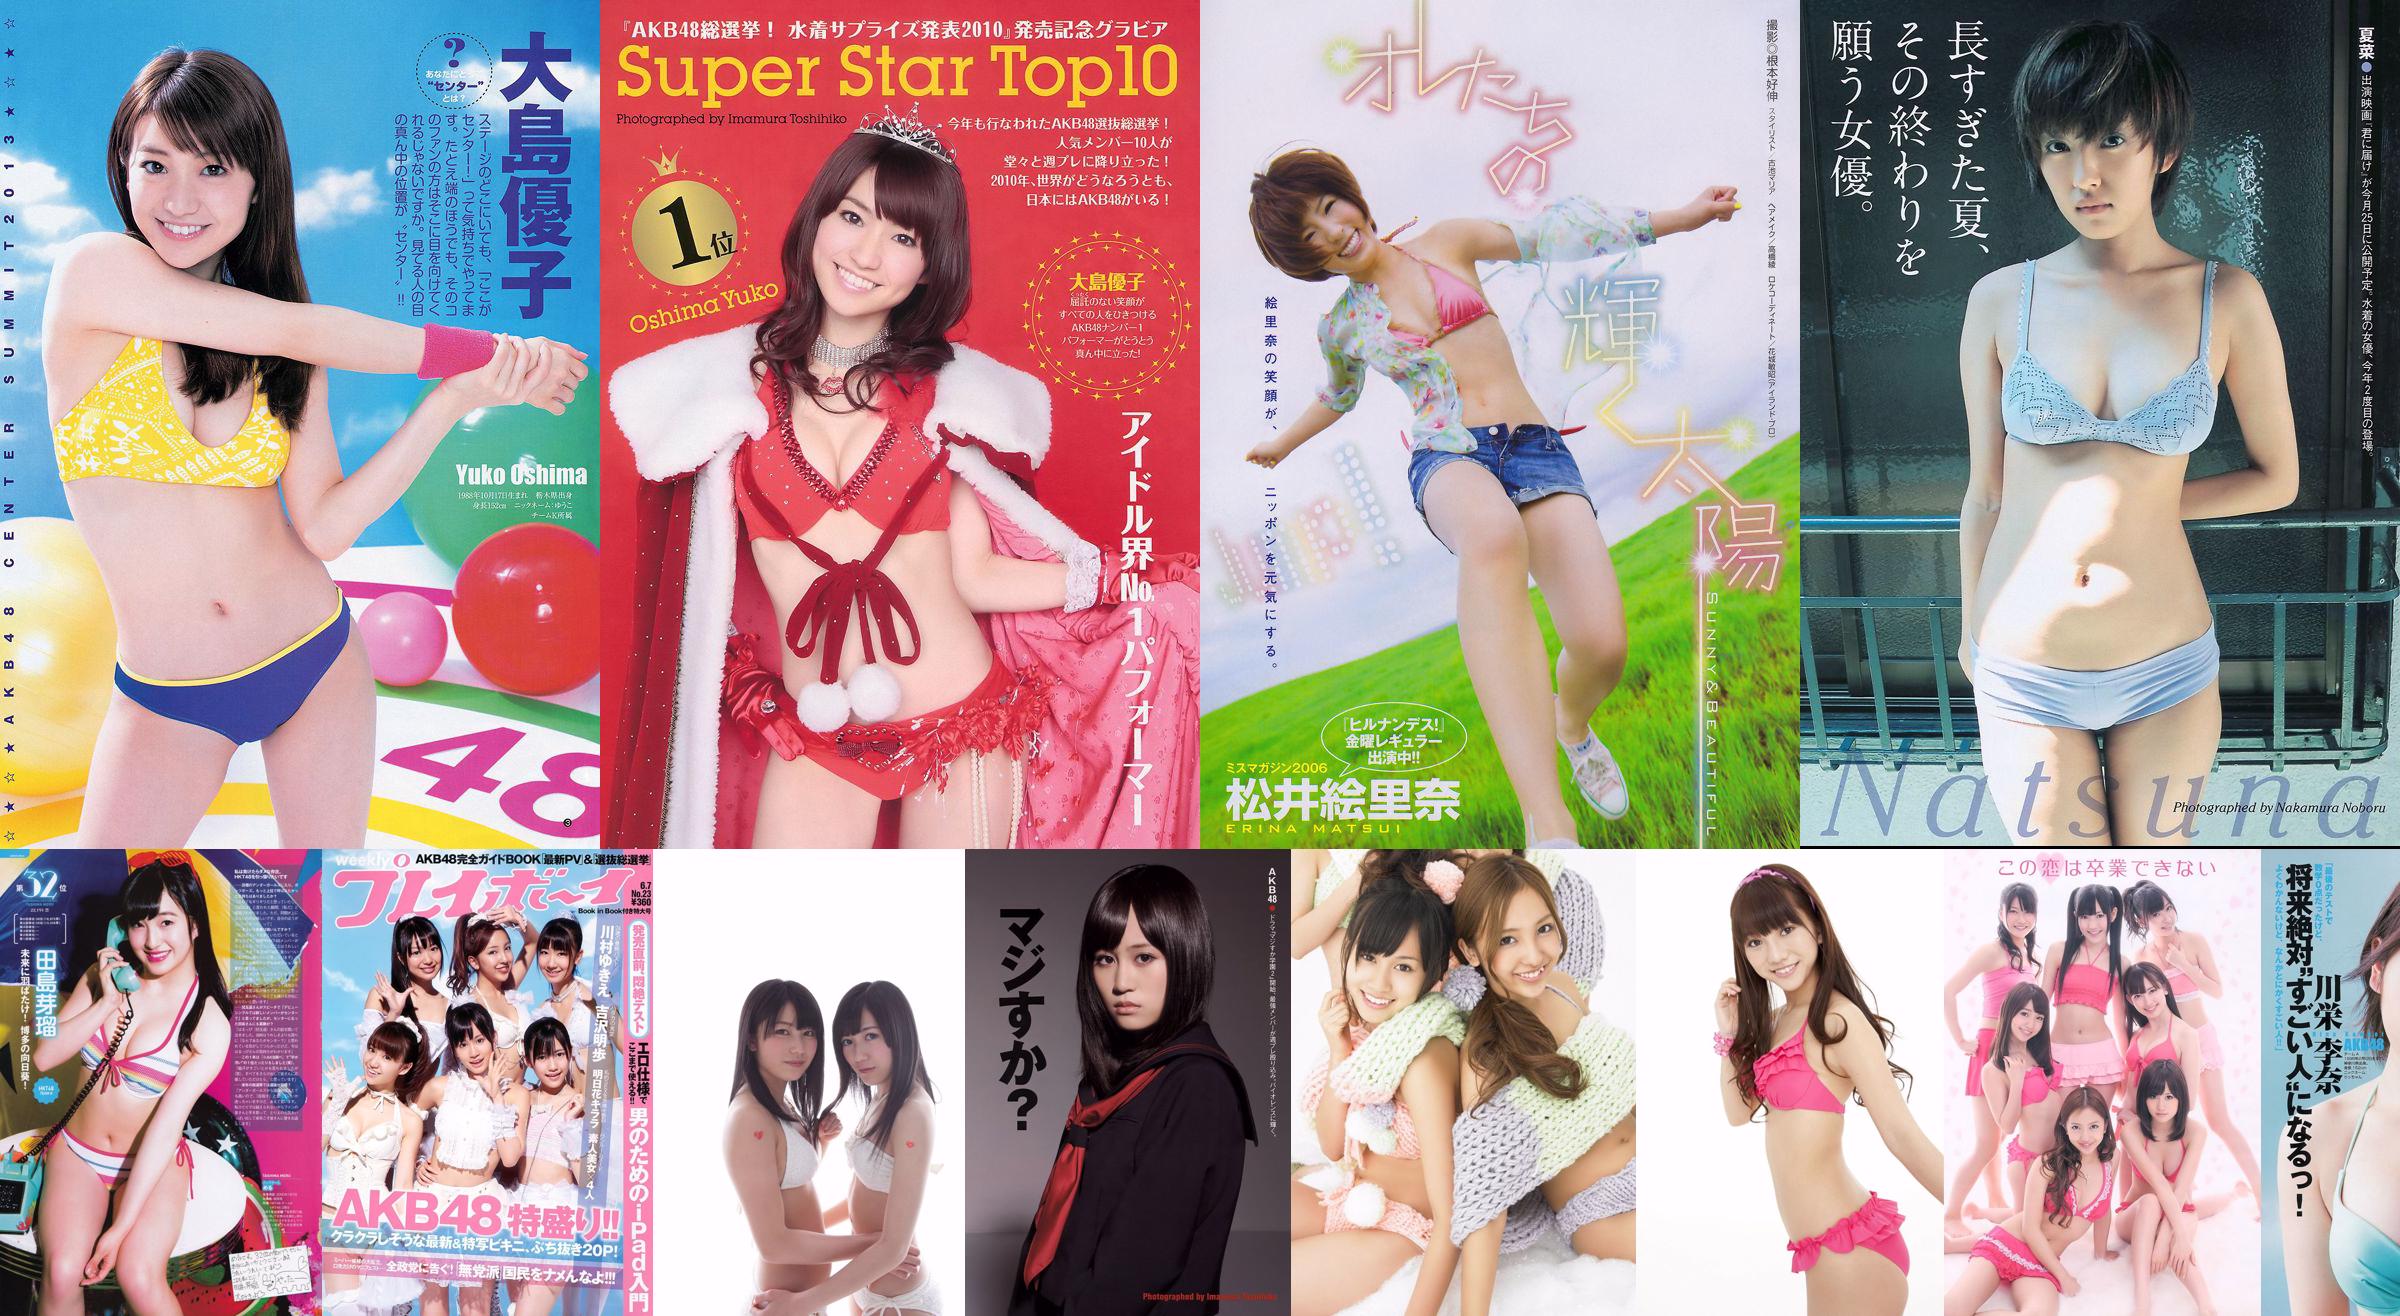 AKB48 Atsuko Maeda Riria Riria Sayaka Okada [Playboy Semanal] 2012 Fotografia No.36 No.c70cb2 Página 10